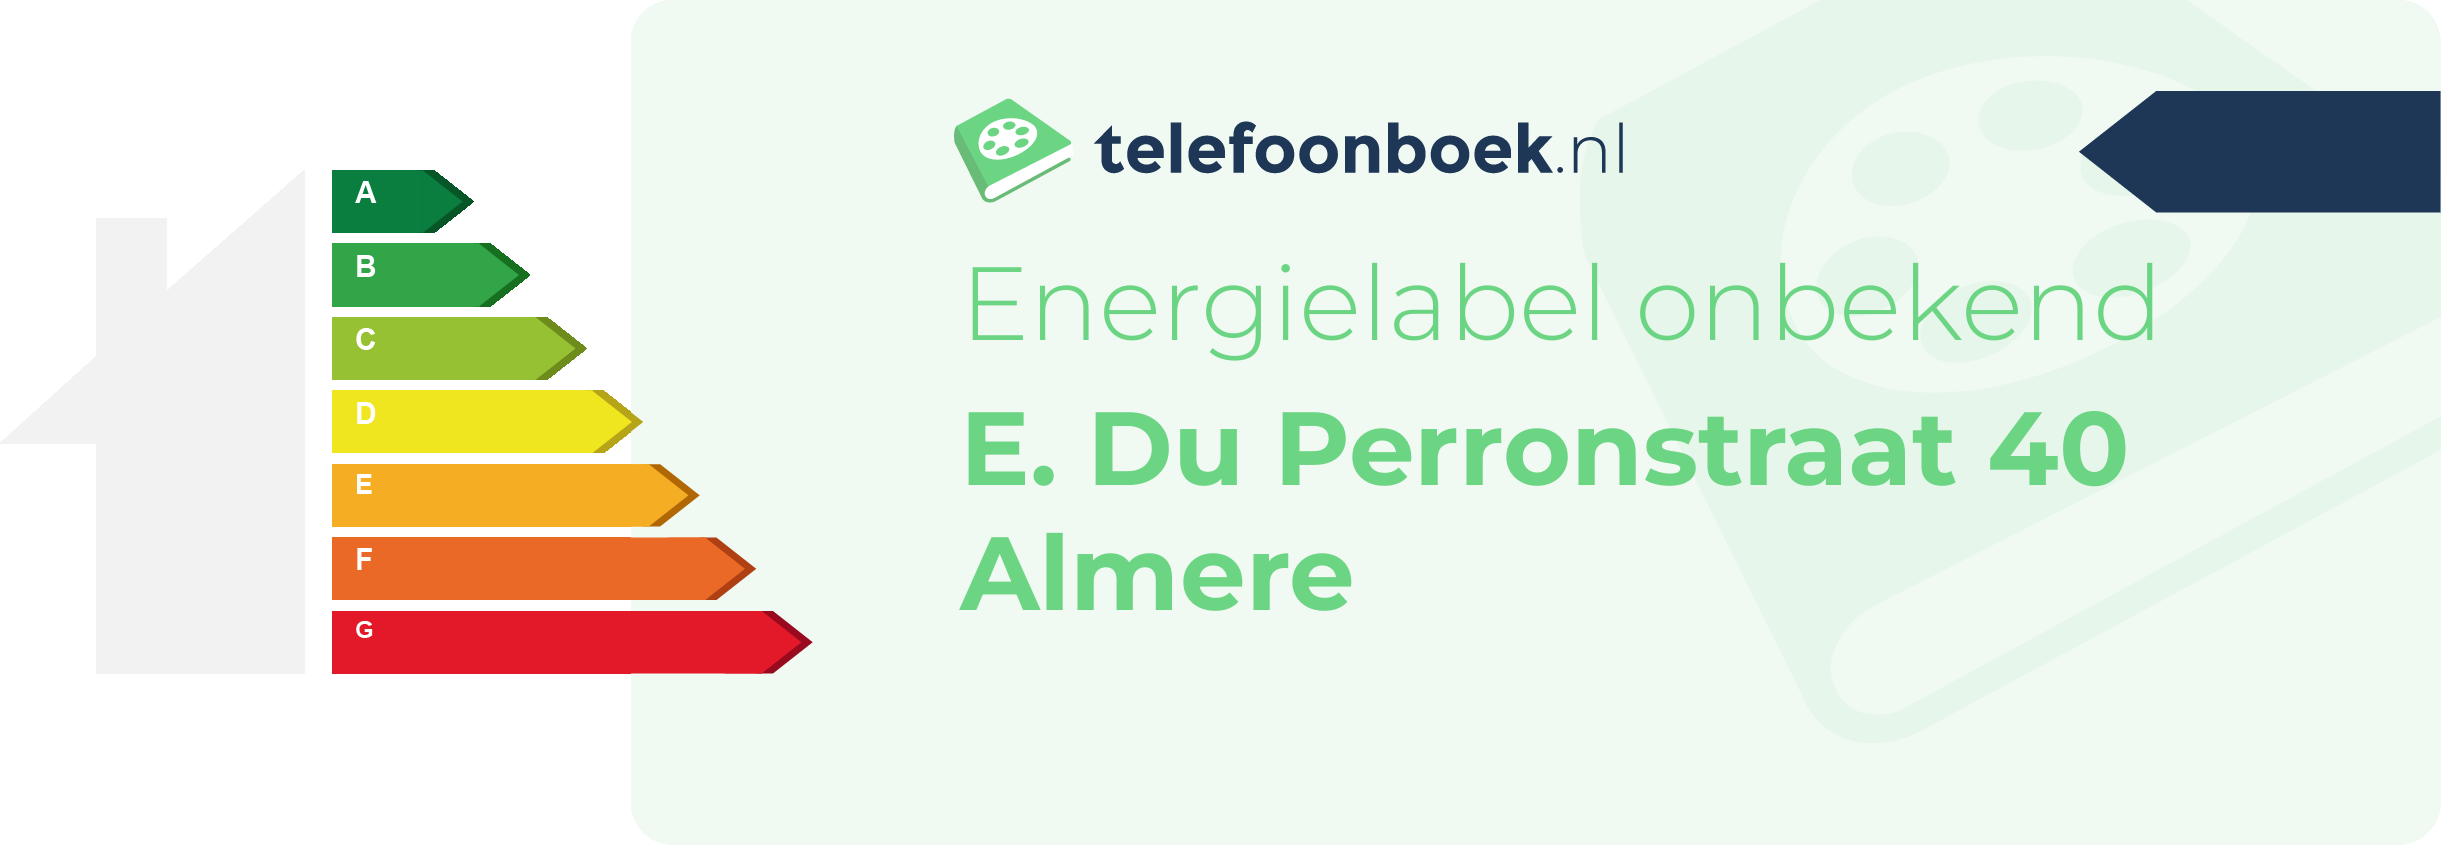 Energielabel E. Du Perronstraat 40 Almere